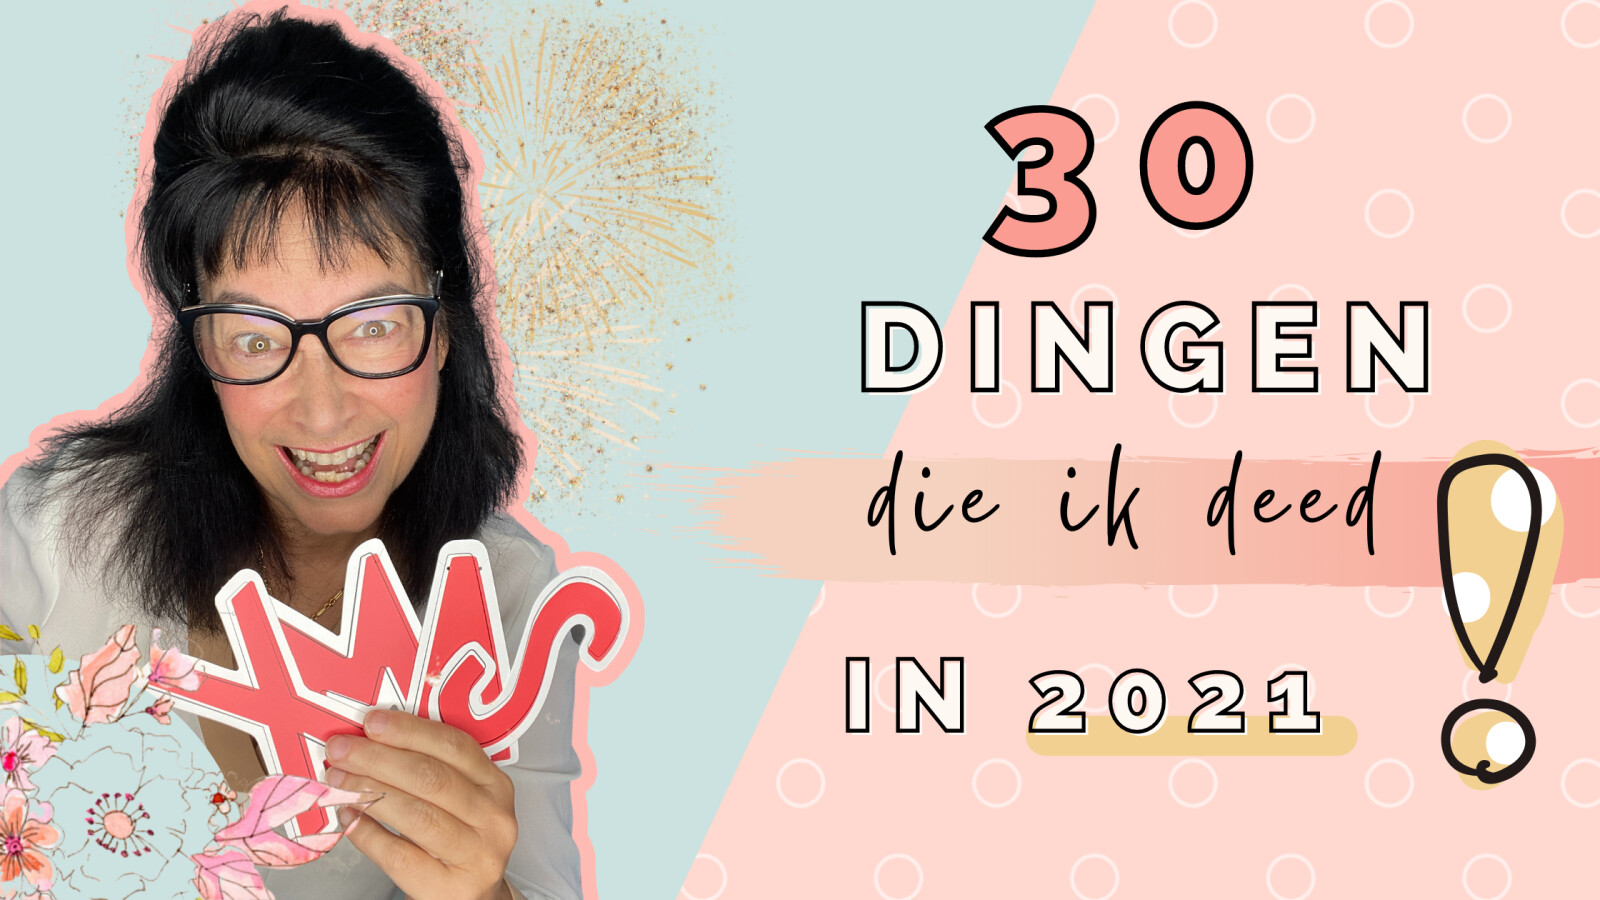 30 dingen die ik deed in 2021